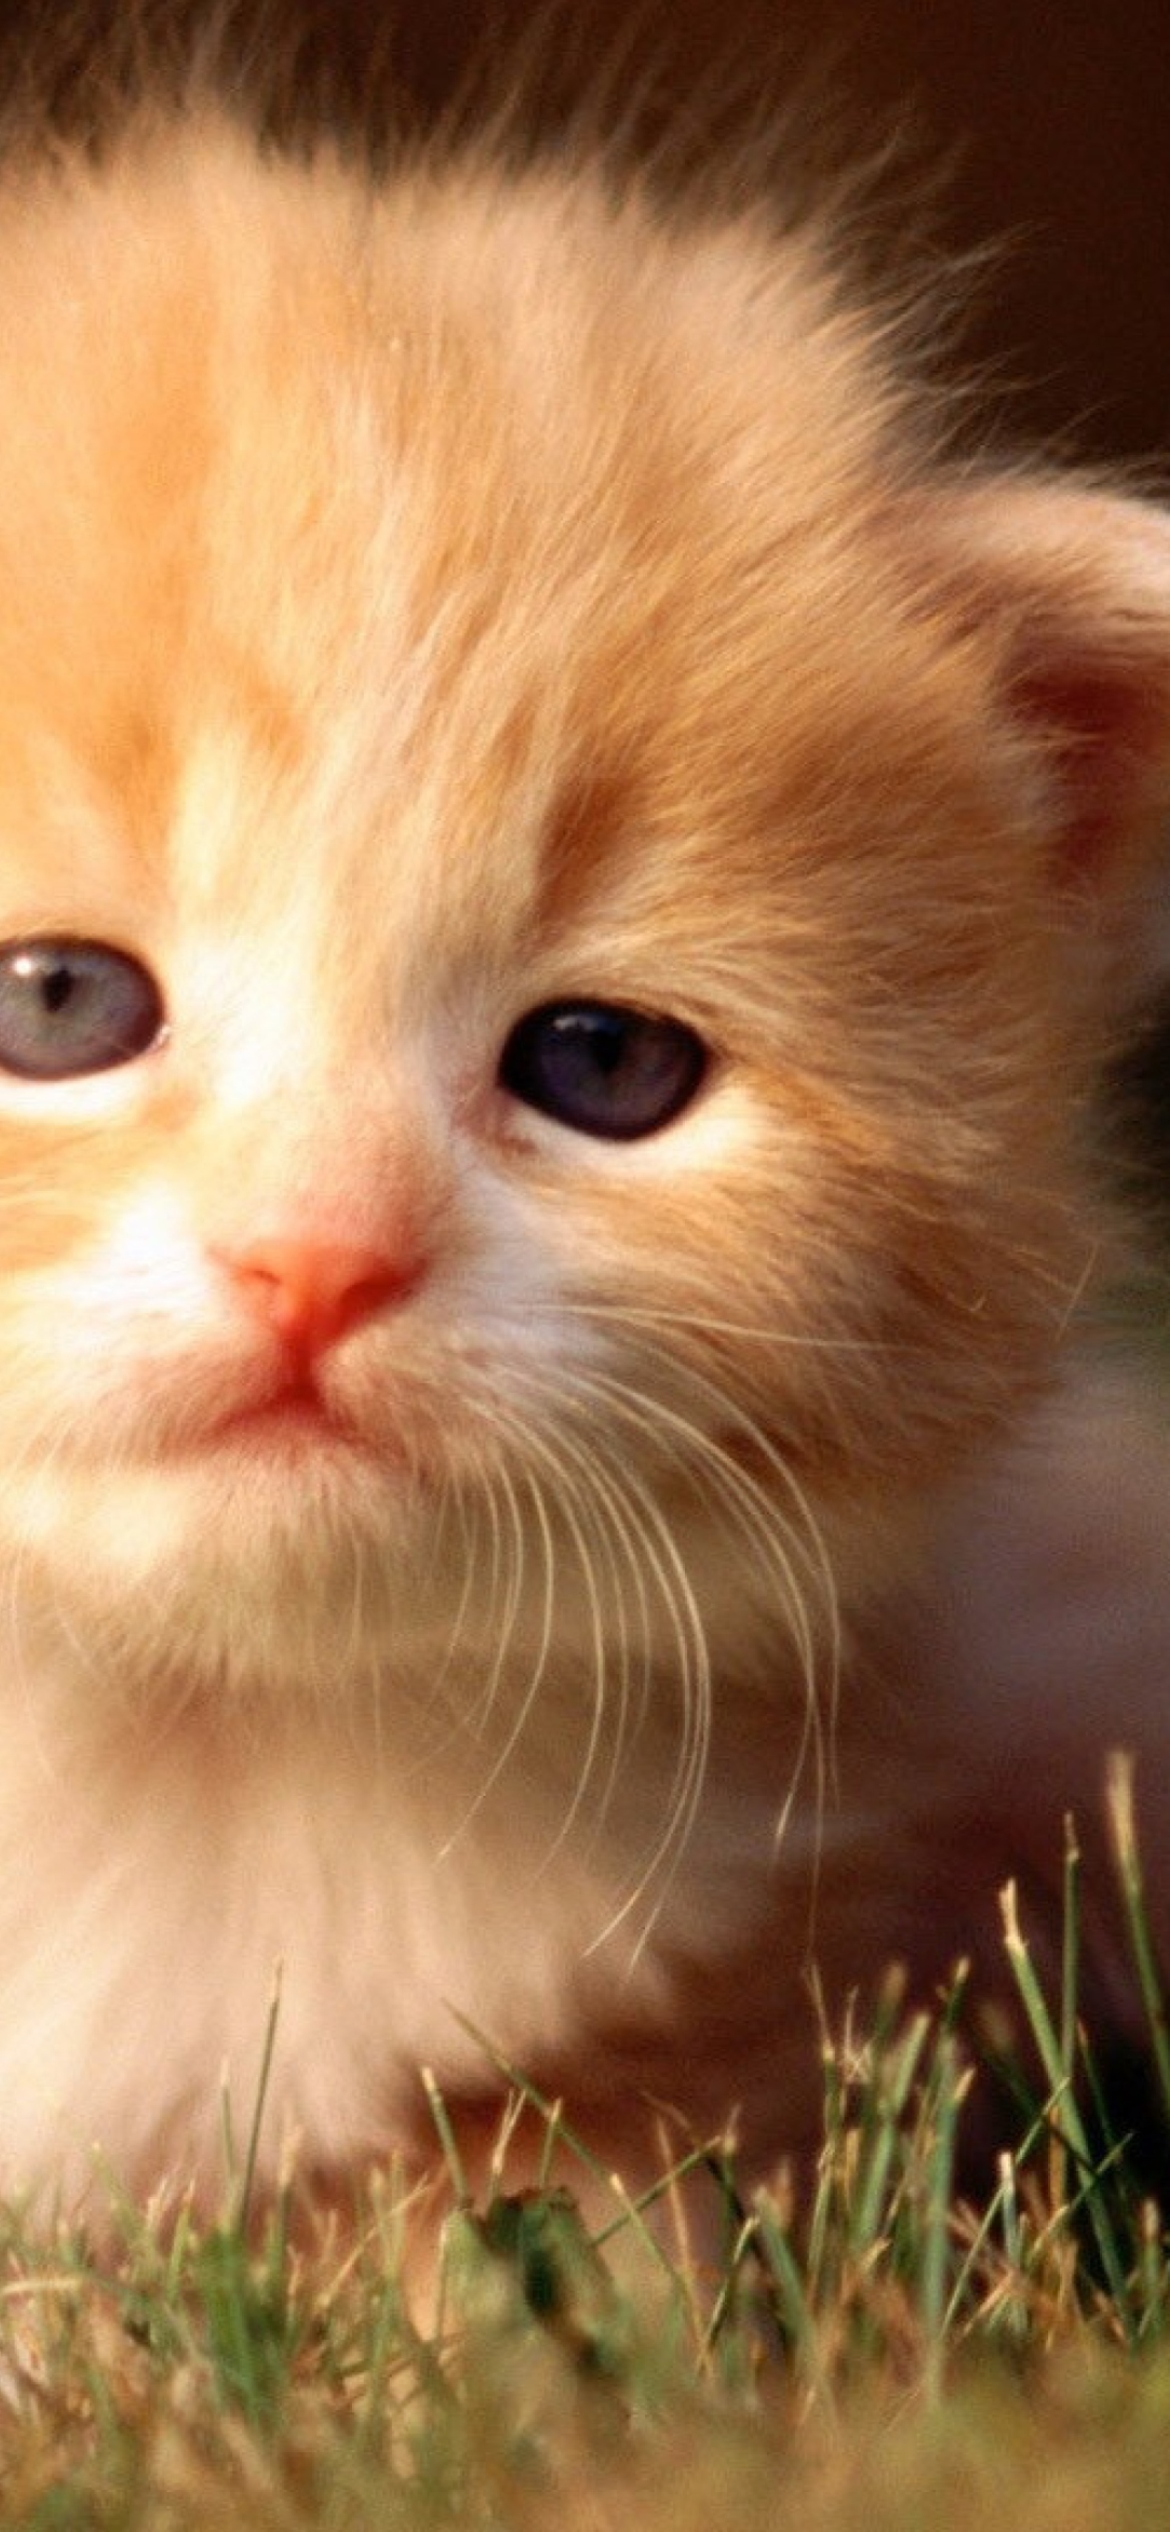 Sfondi Cute Little Kitten 1170x2532